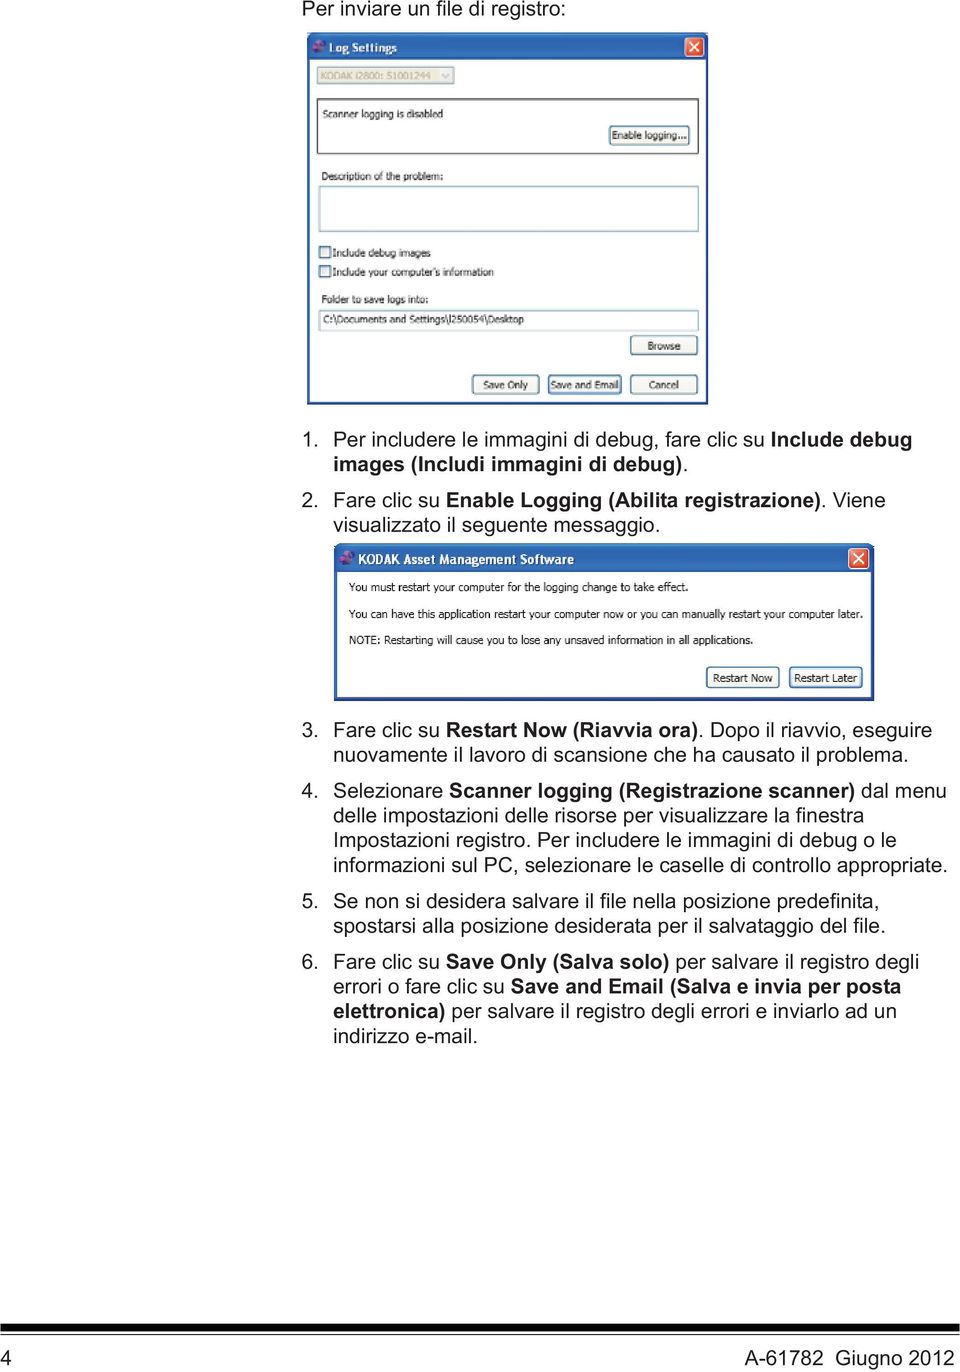 Selezionare Scanner logging (Registrazione scanner) dal menu delle impostazioni delle risorse per visualizzare la finestra Impostazioni registro.